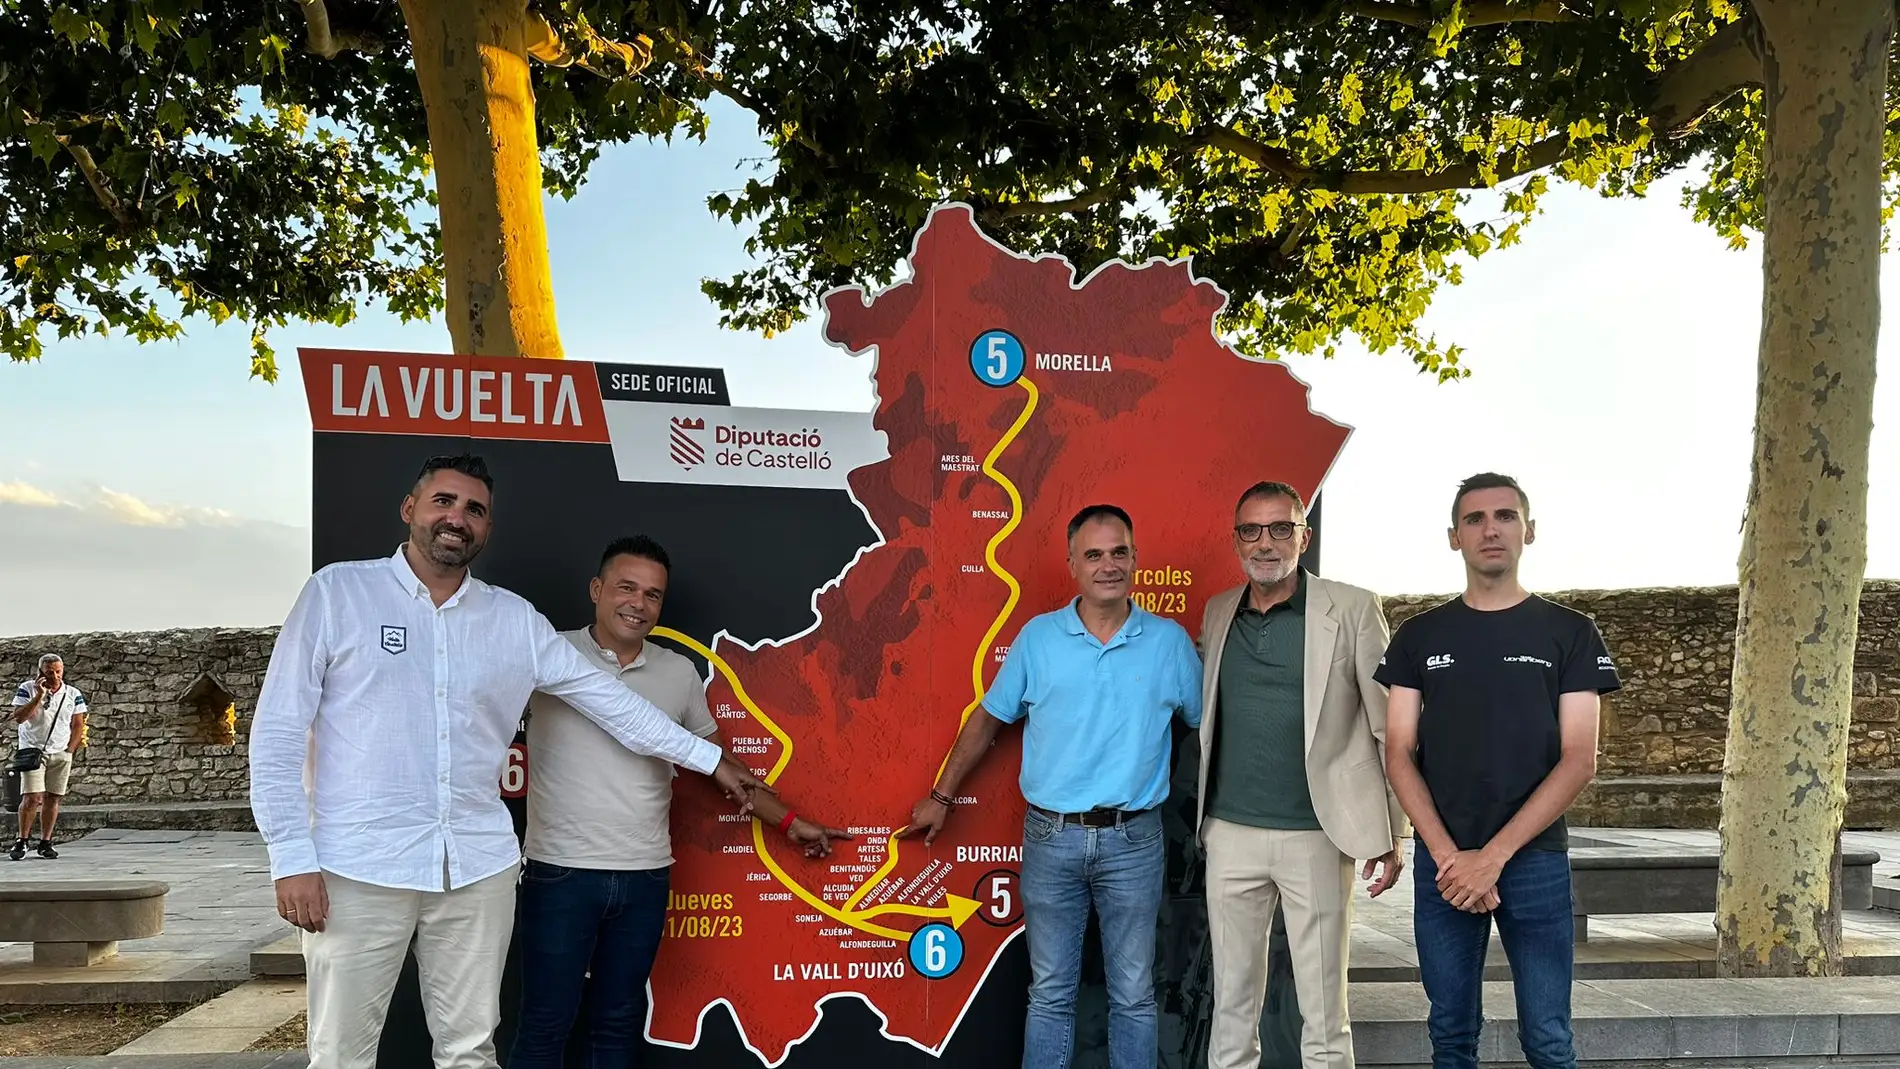 La quinta etapa de la Vuelta Ciclista a España pasará por Onda el 30 de agosto 